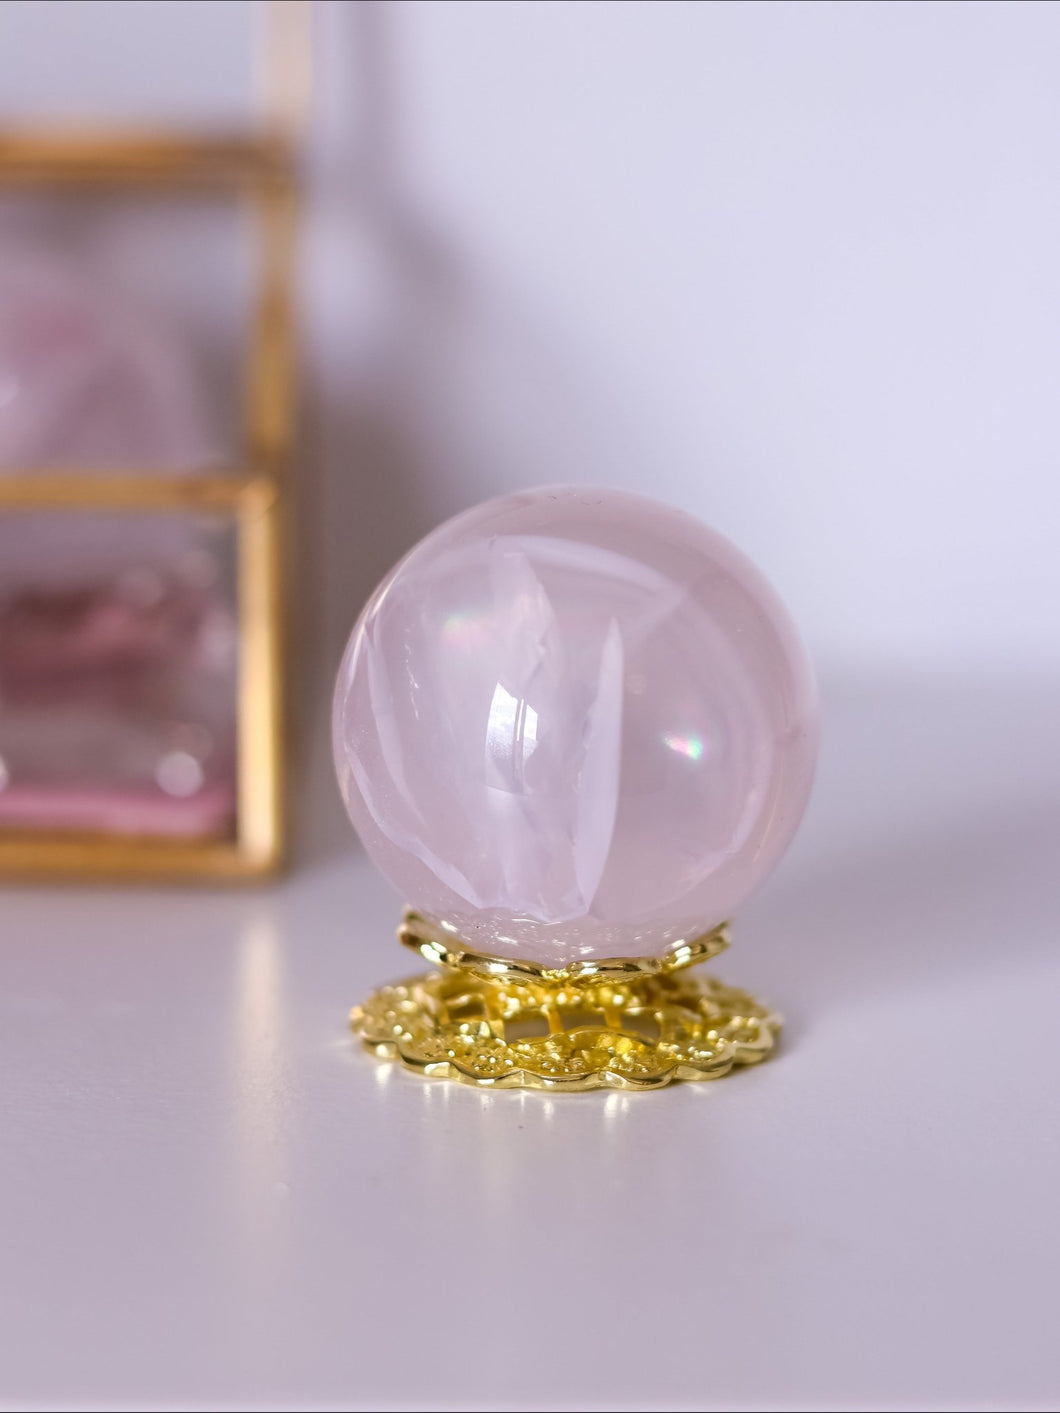 Girasol rose quartz sphere - Blissful Moon Co.